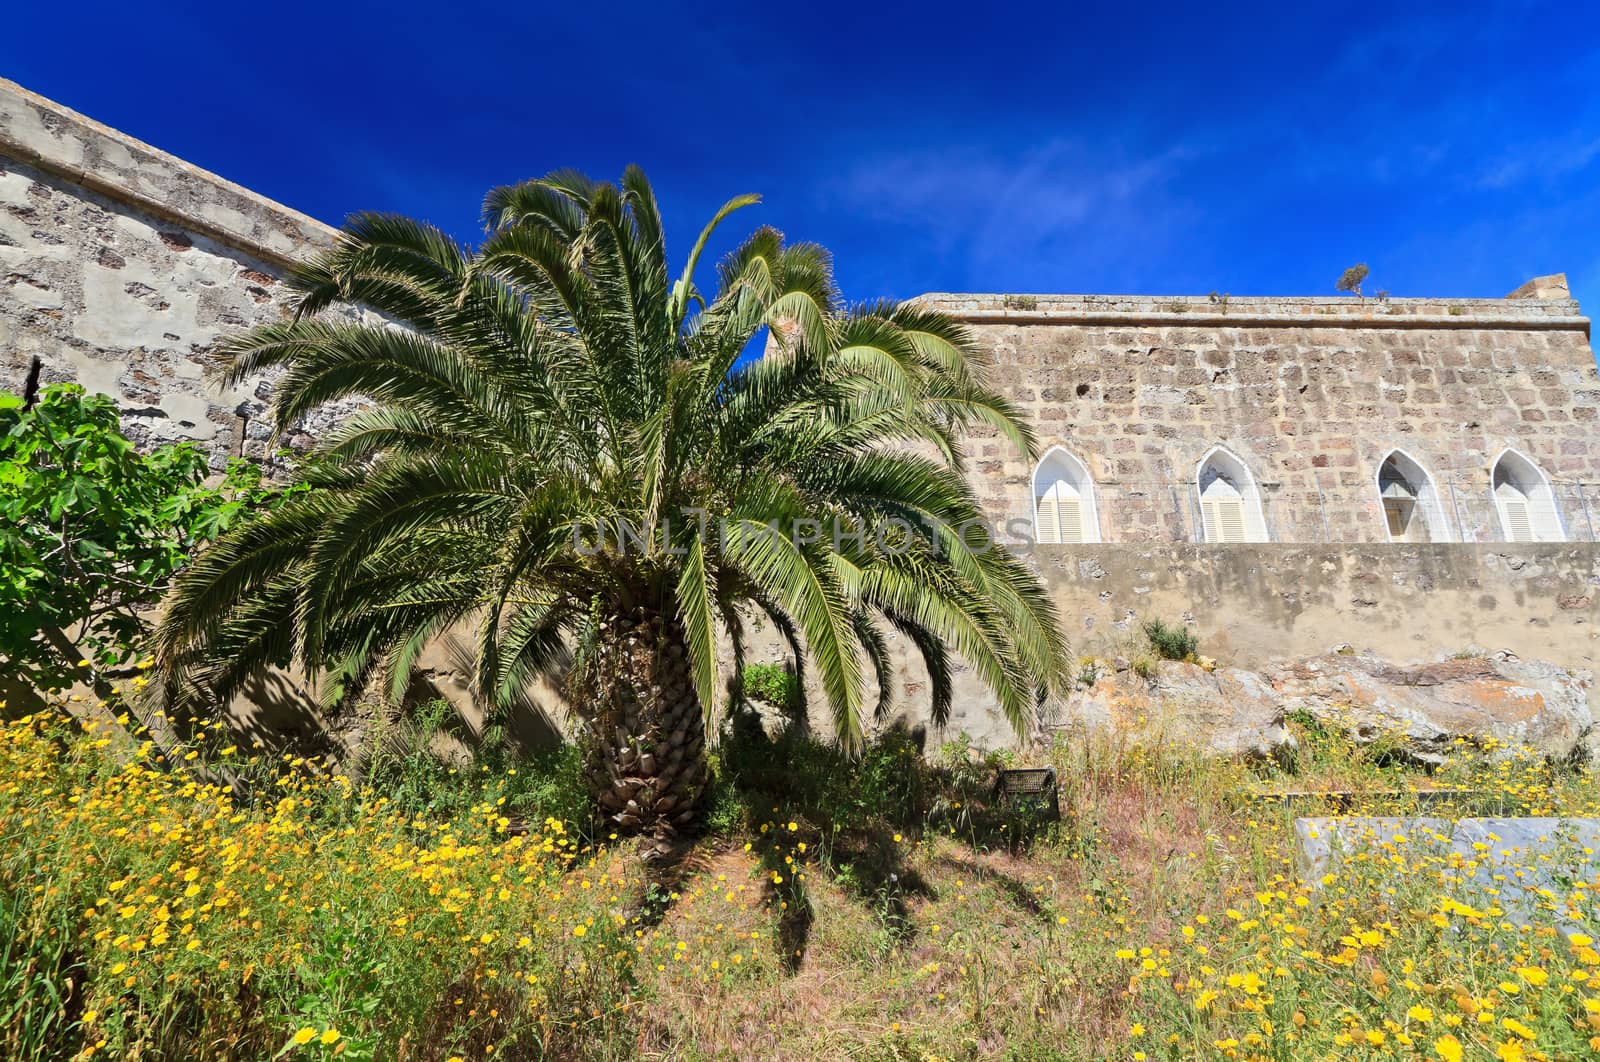 exterior of Carloforte walls with palm tree, Sardinia, italy